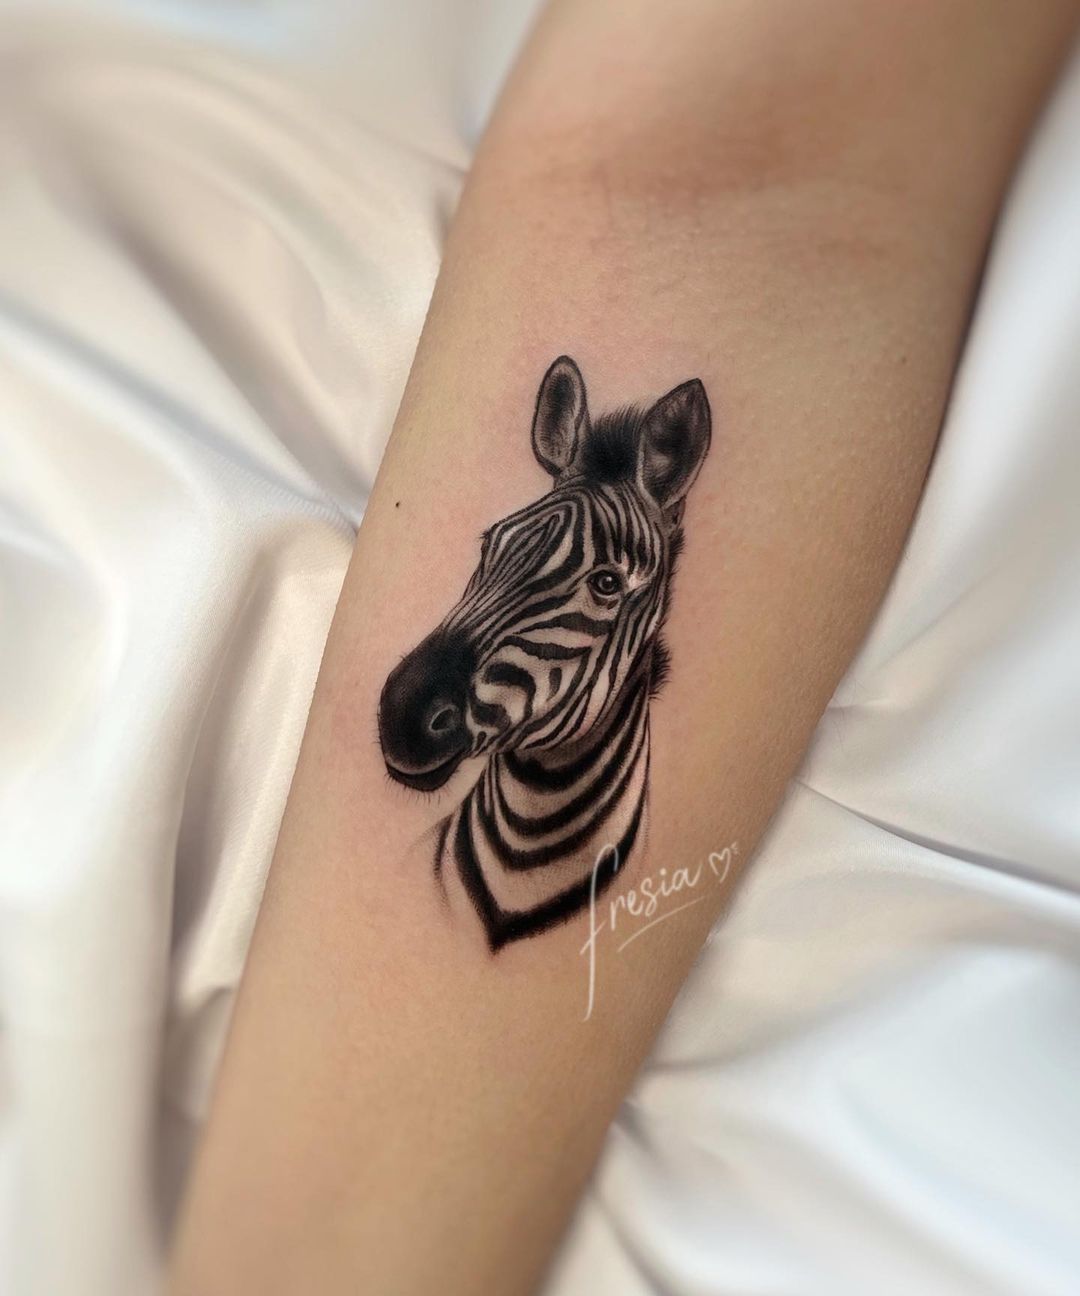 Amazing zebra portrait tattoo by fresia.tattoo